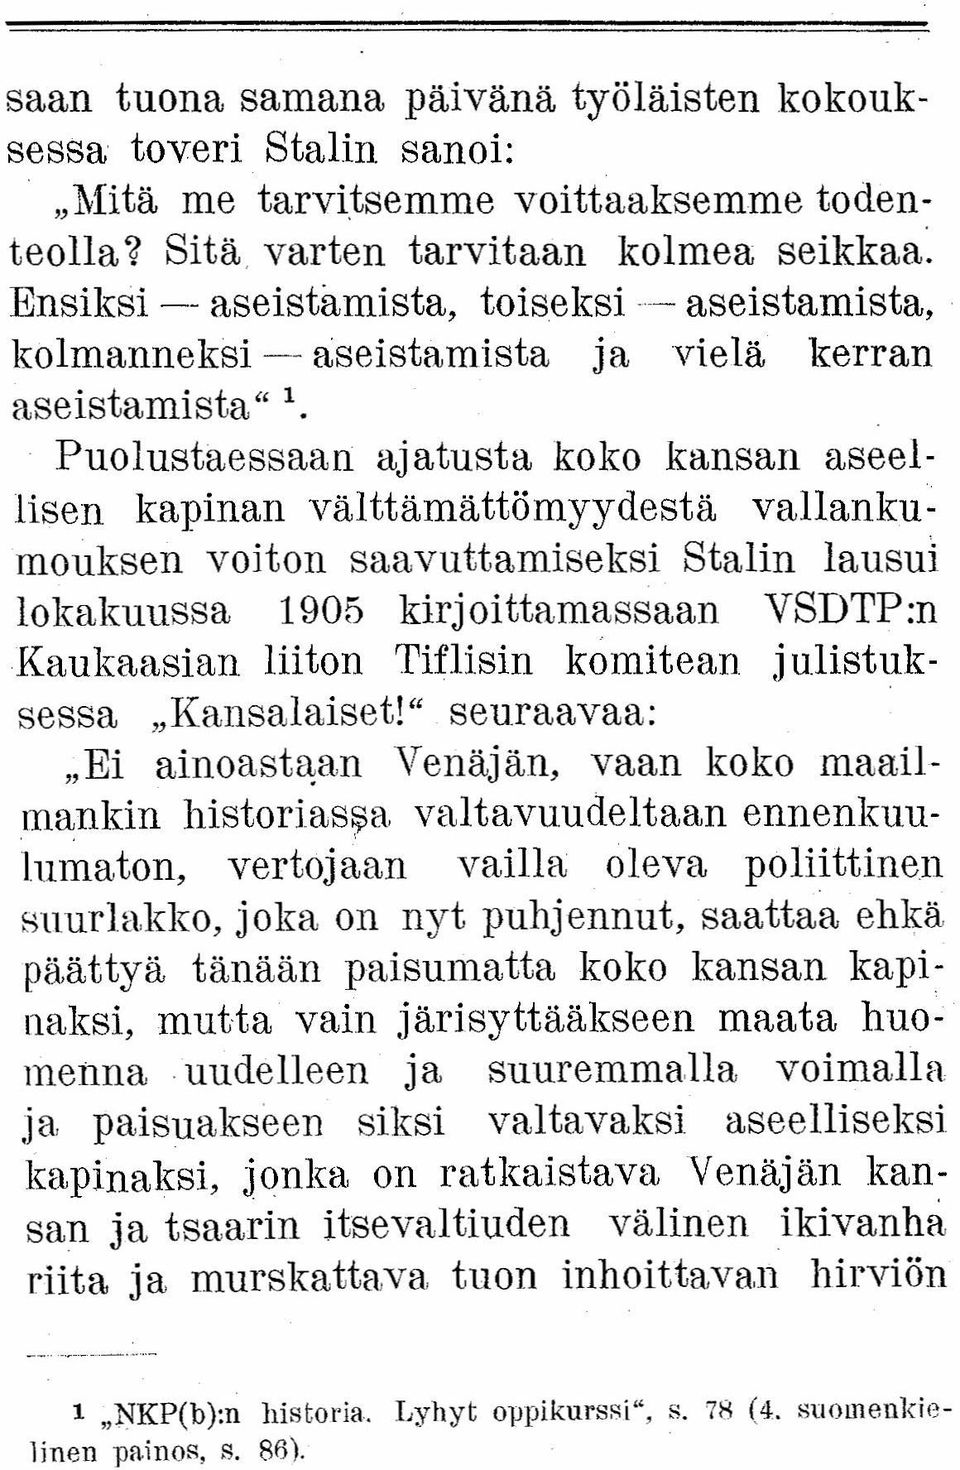 Puolustaessaan ajatusta koko kansan aseellisen kapinan välttämättömyydestä vallankumouksen voiton saavuttamiseksi Stalin lausui lokakuussa 1905 kirjoittamassaan VSDTP:n Kaukaasian liiton Tiflisin